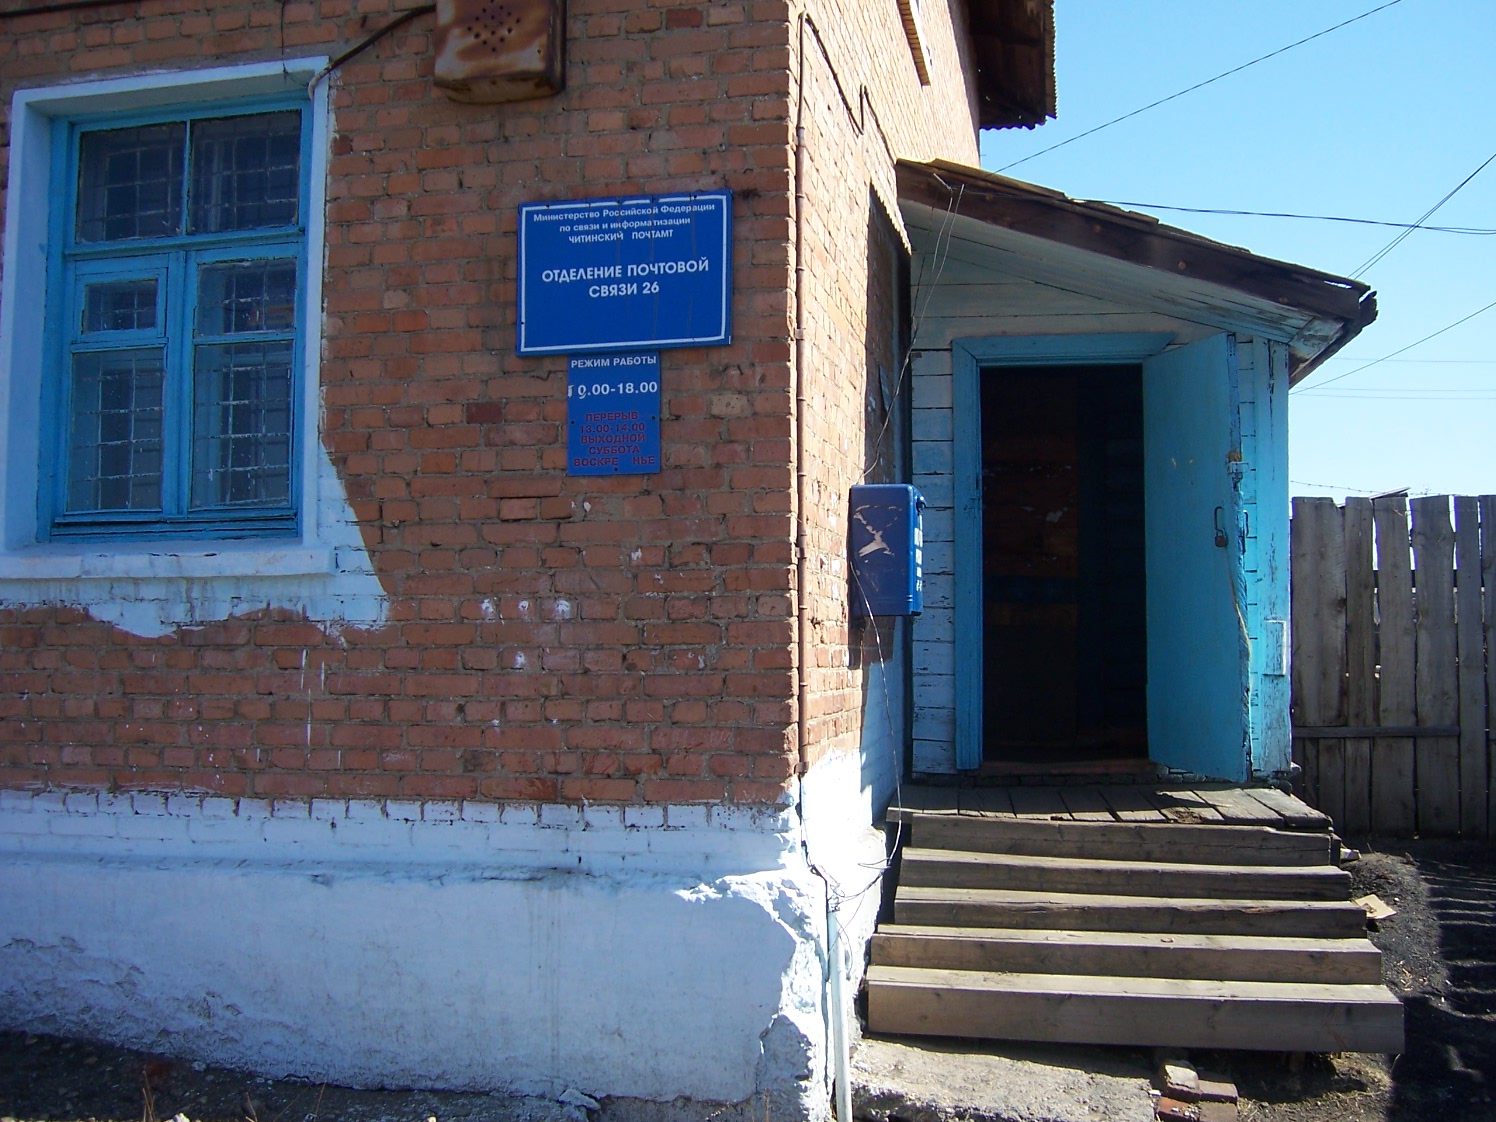 ВХОД, отделение почтовой связи 672026, Забайкальский край, Чита